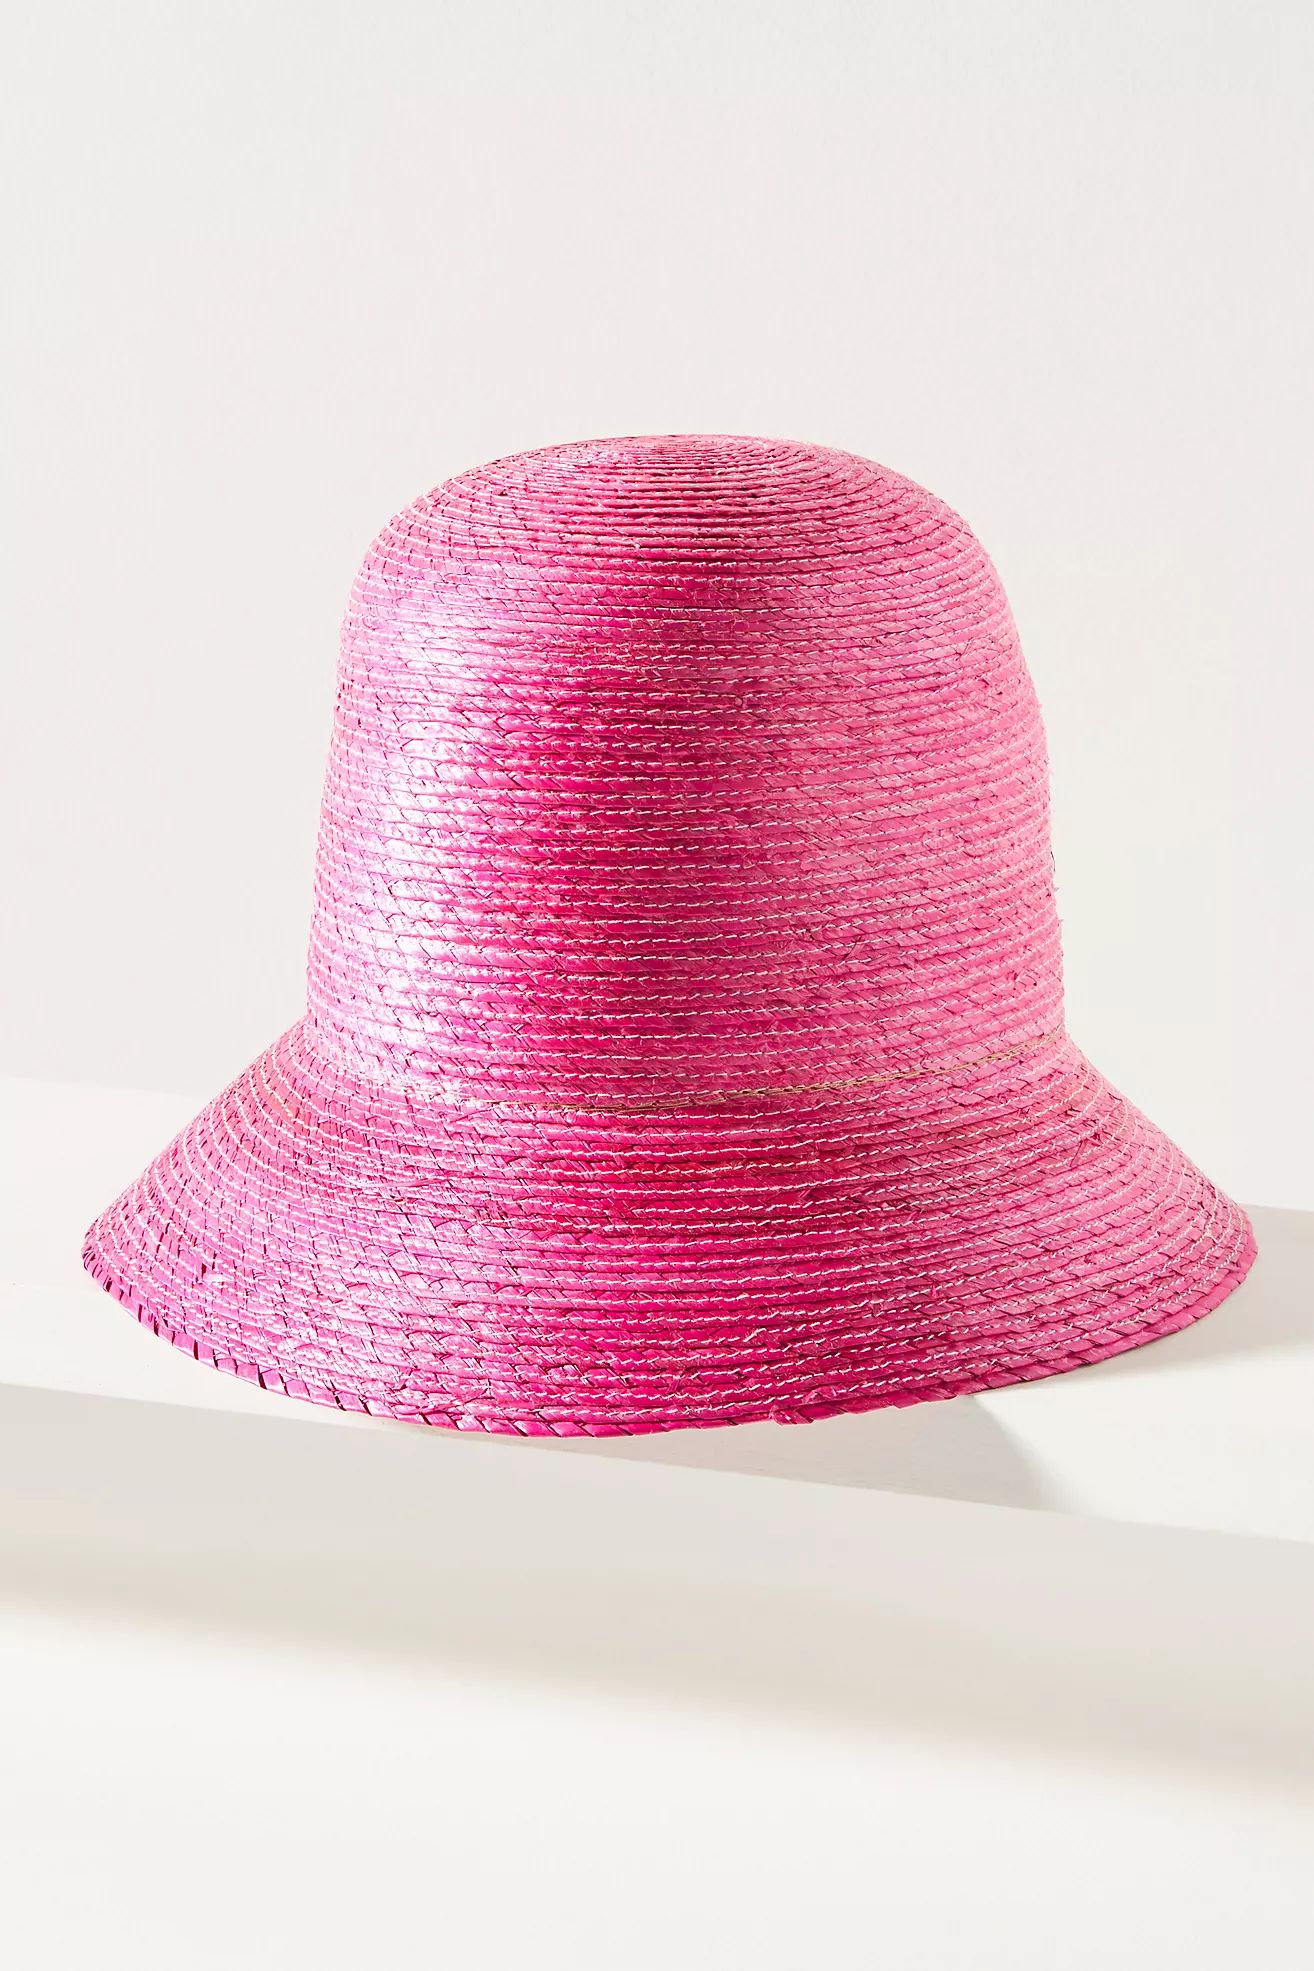 ASN High-Crown Straw Bucket Hat | Anthropologie (US)